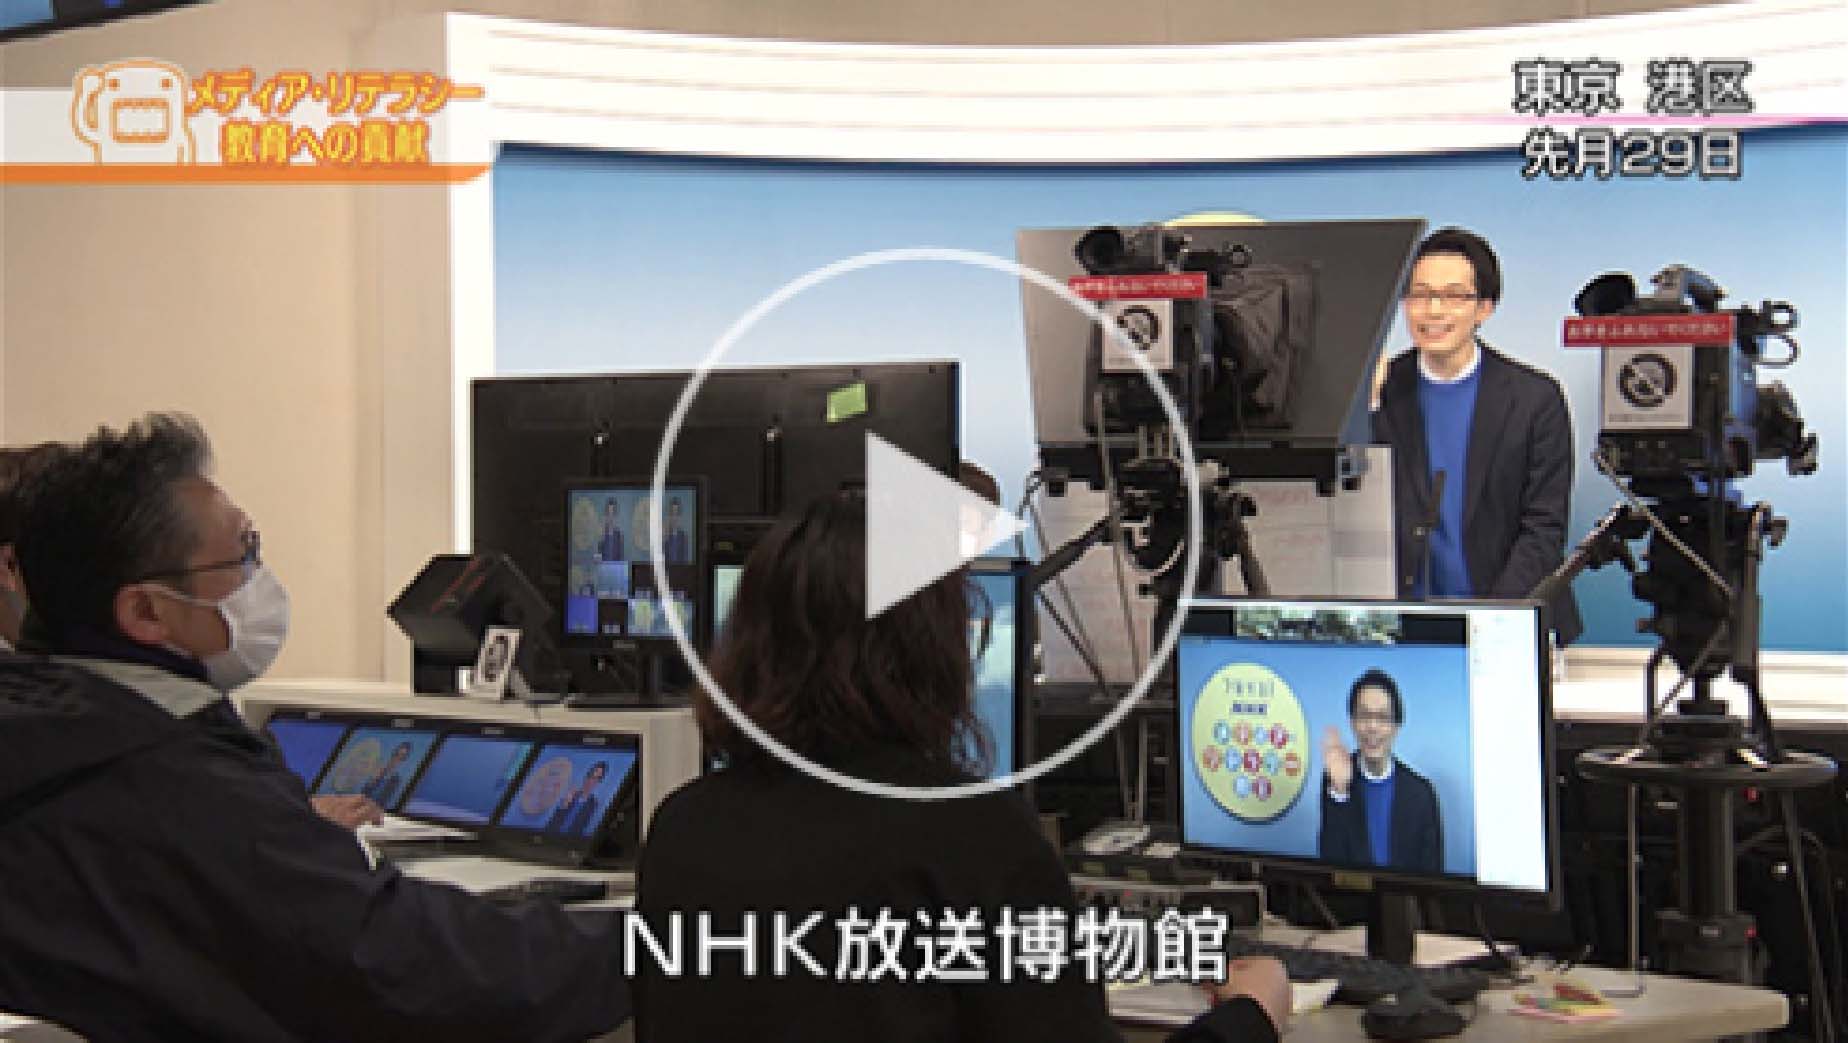 「メディア・リテラシー教育への貢献」動画 (2月21日放送「どーも、NHK」より)